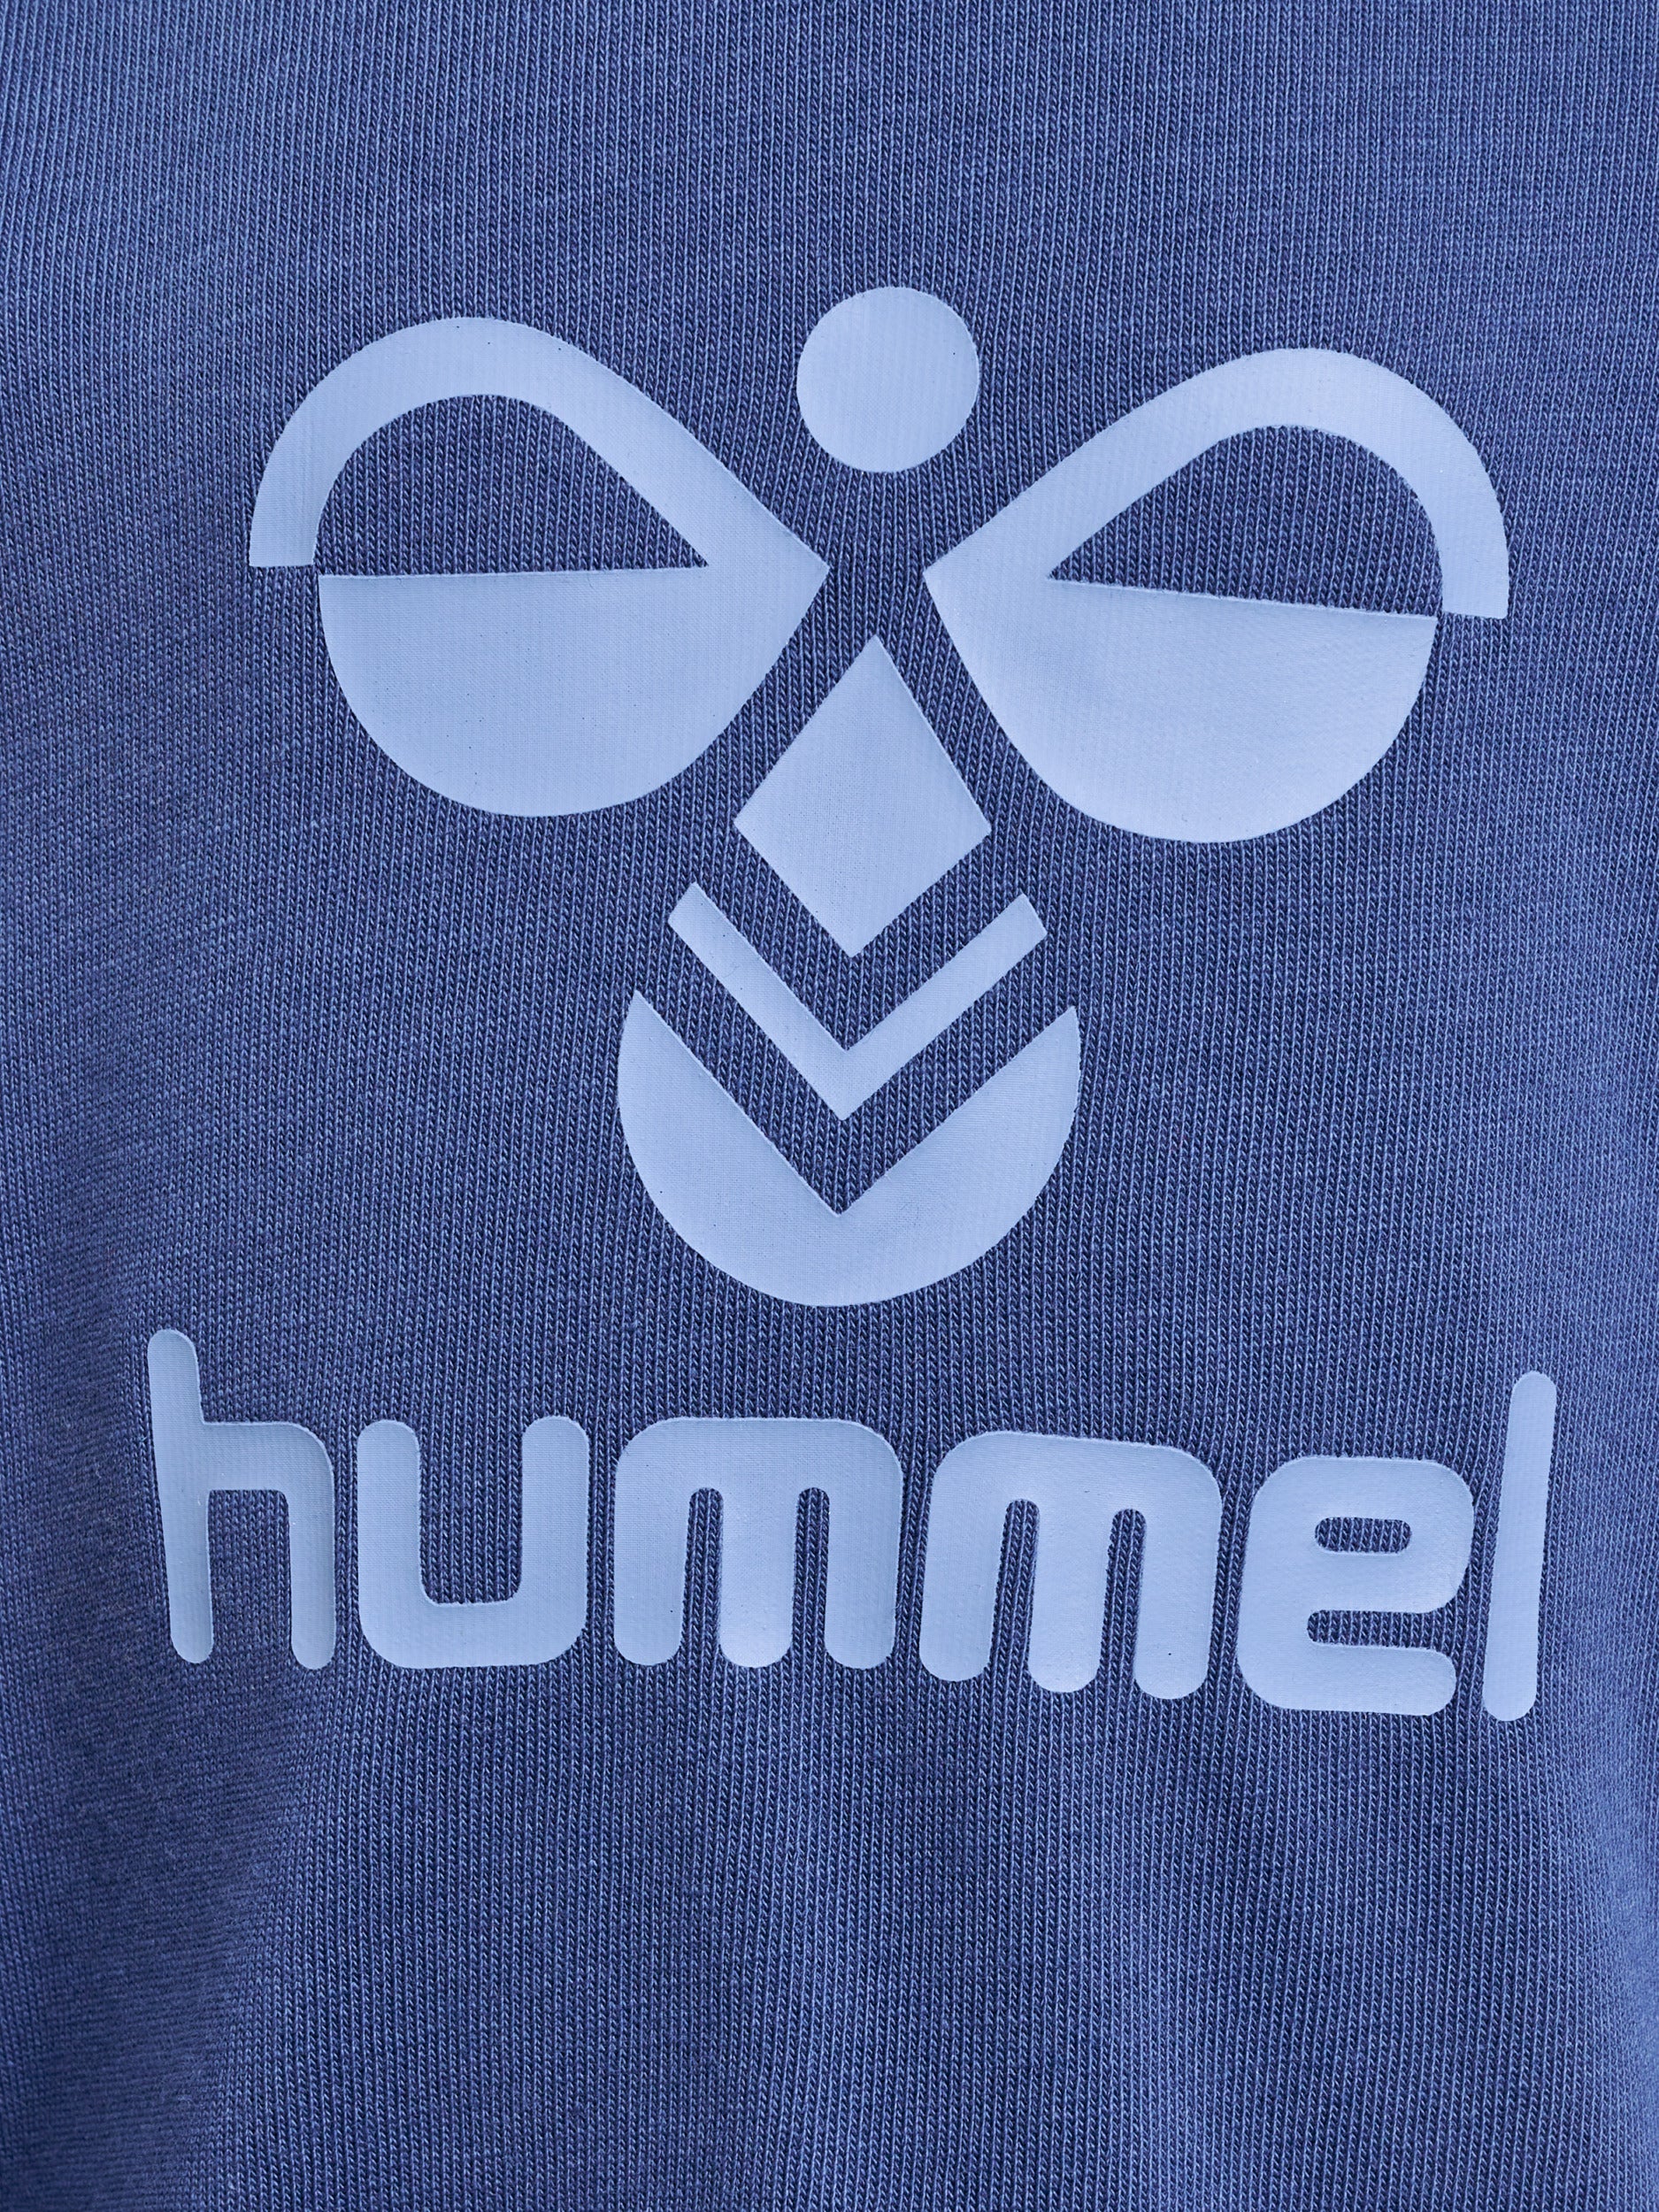 Hummel Arine Crewsuit